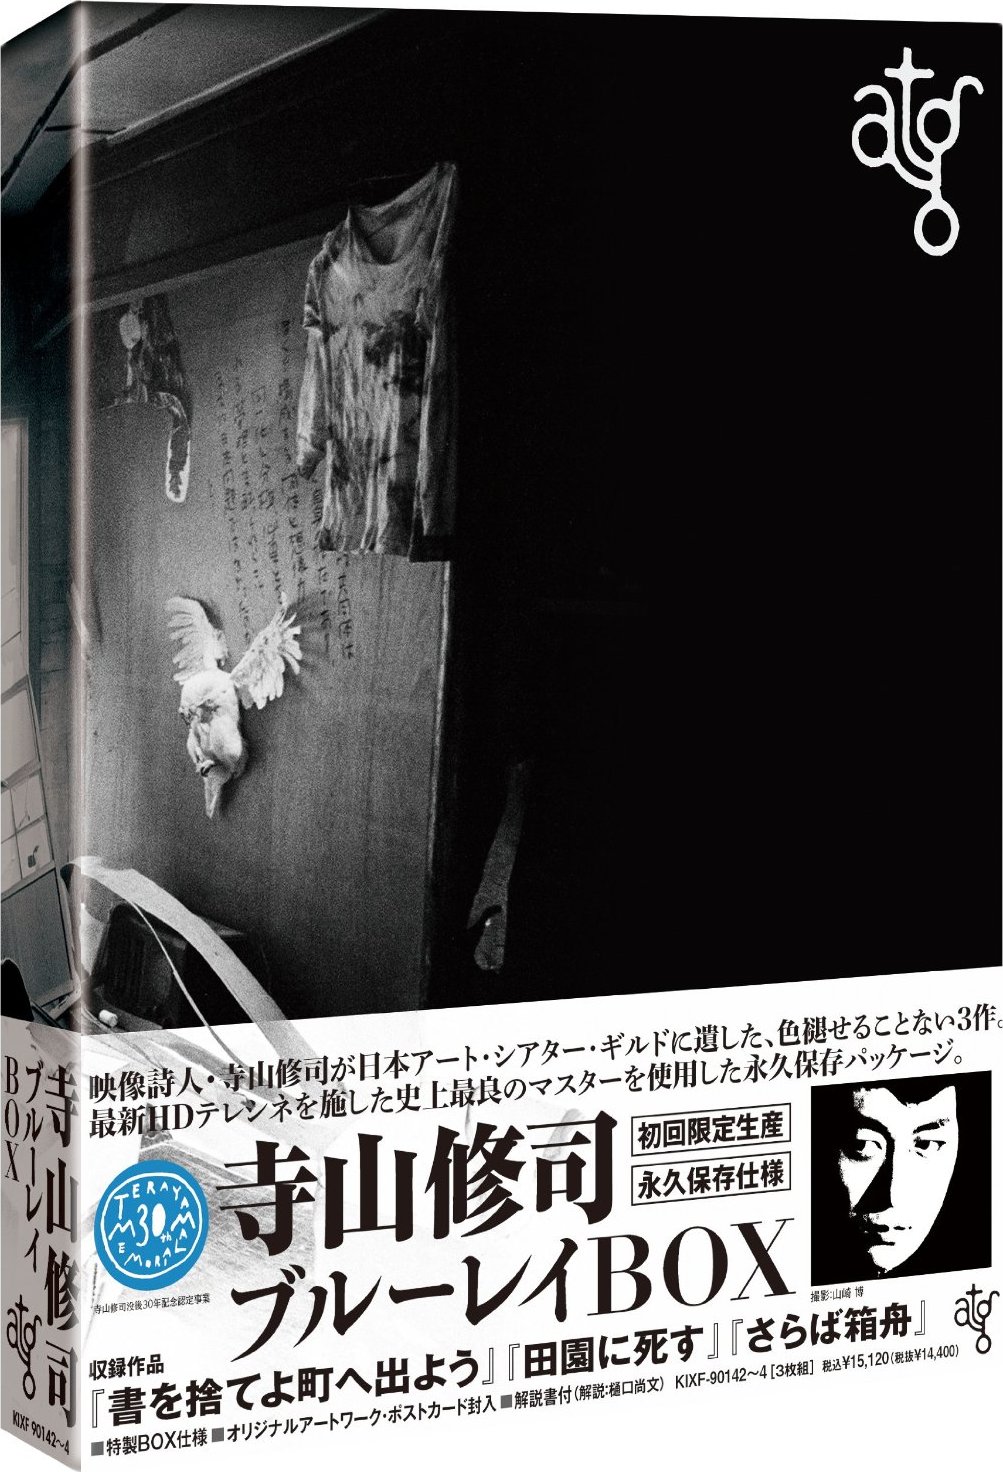 atg Shuji Terayama Box Blu-ray (Throw Away Your Books, Rally in